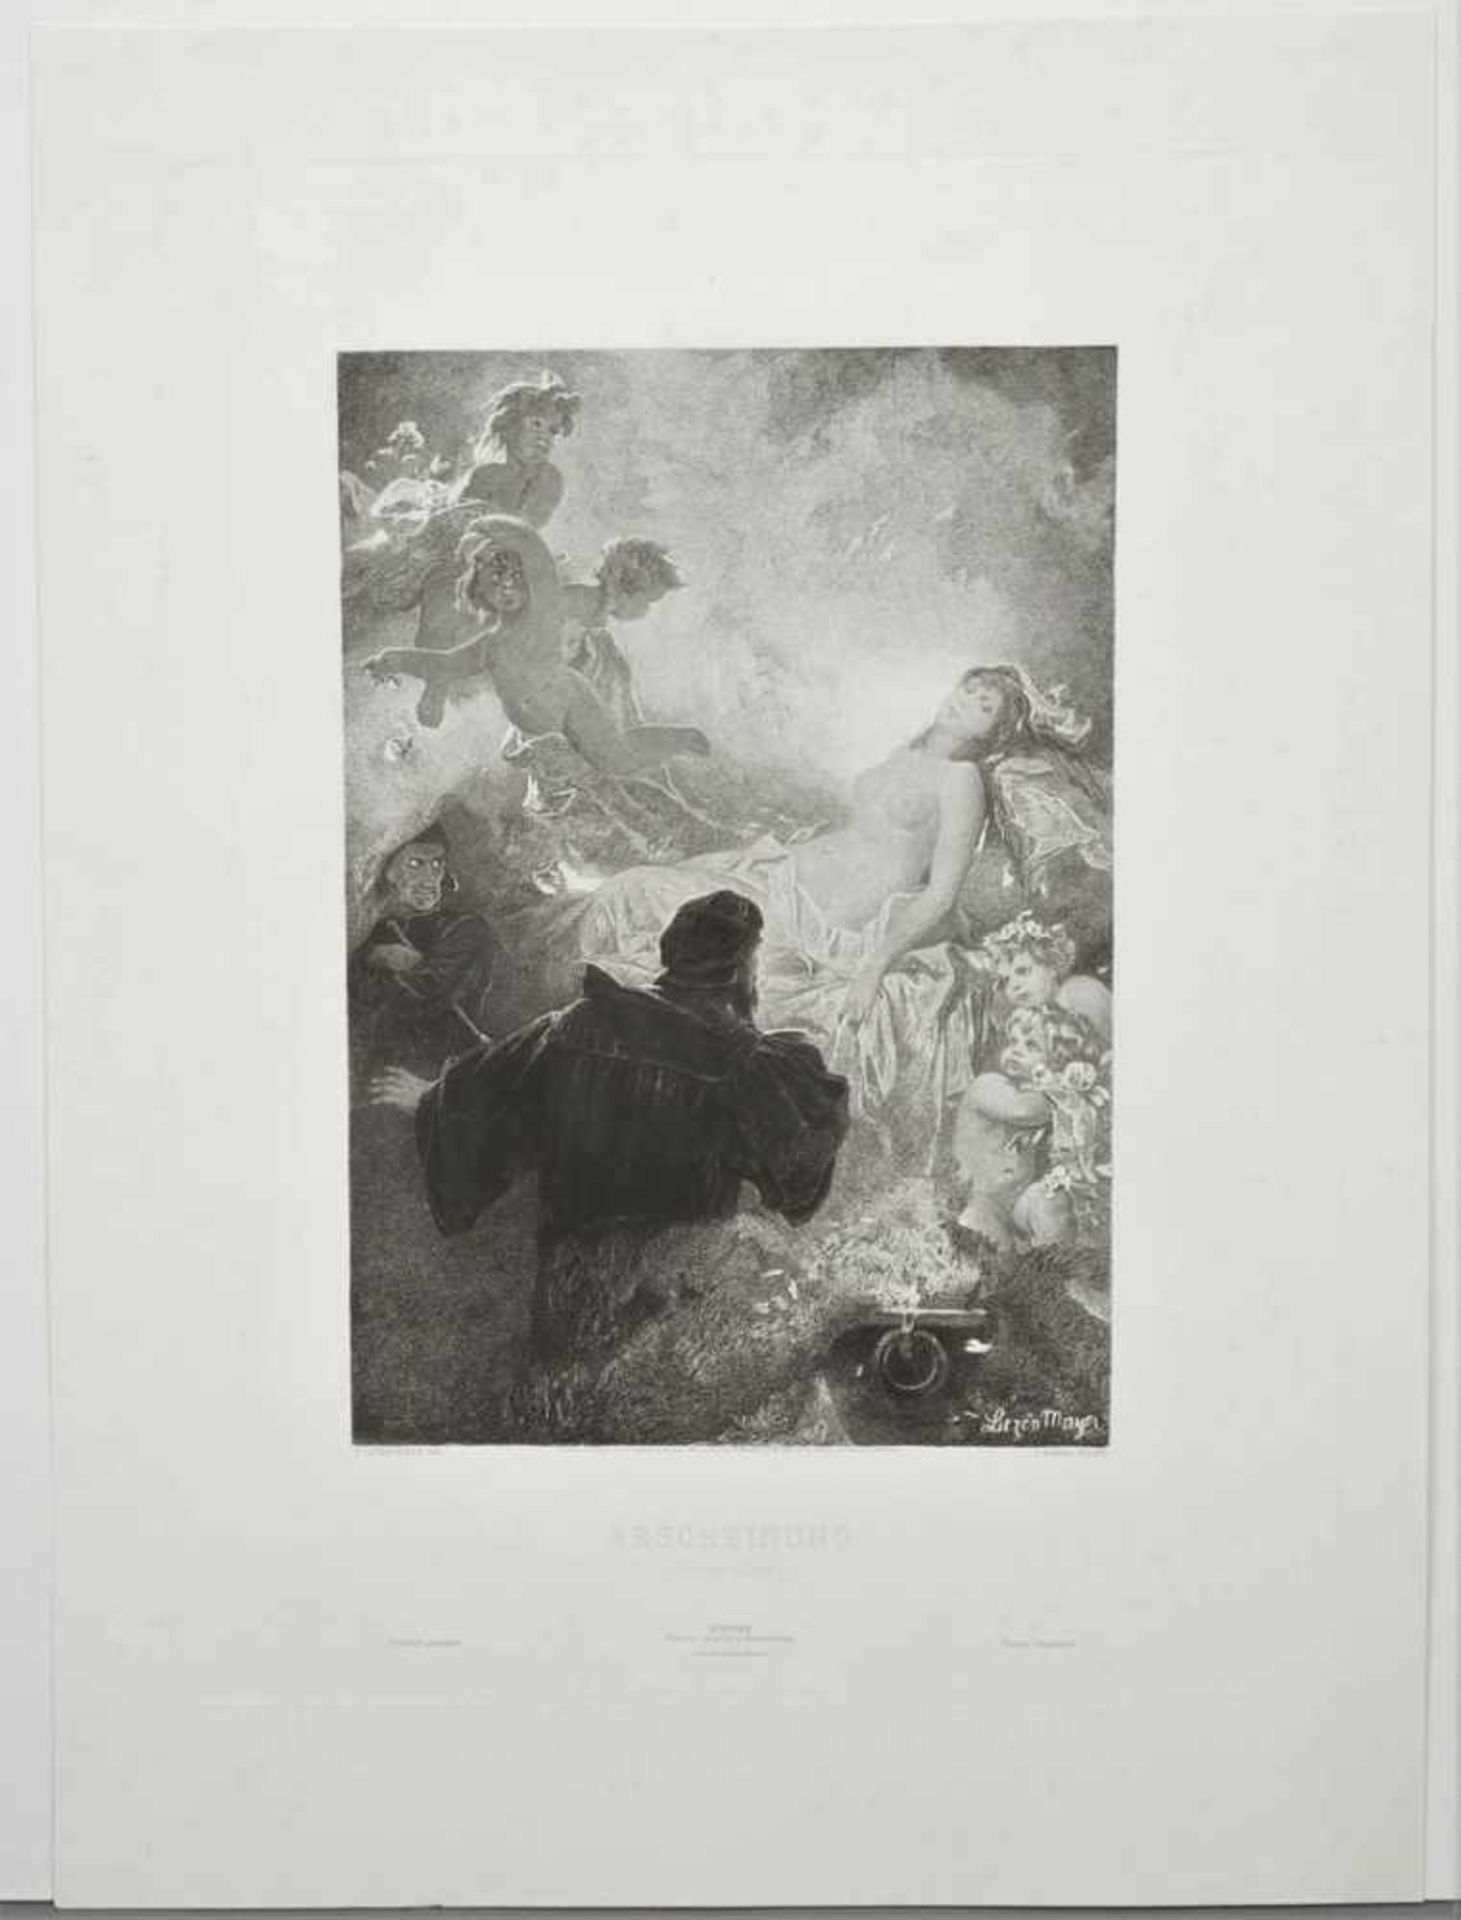 Alexander Liezen-Mayer, "Erscheinung. Hexenküche (Faust blickt in den Zauberspiegel)" - Image 3 of 4